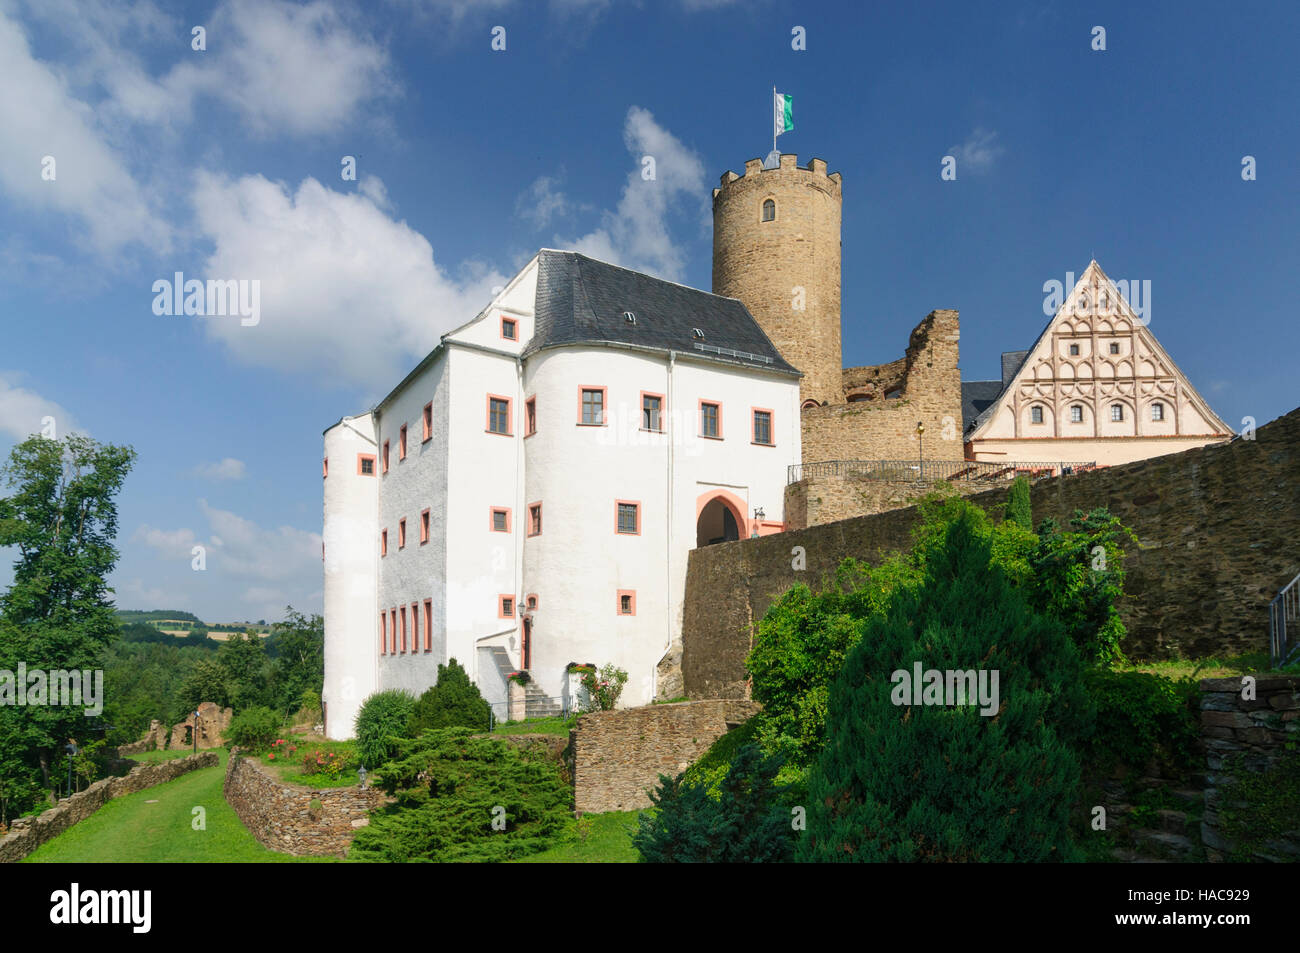 Drebach: Castle Scharfenstein, Erzgebirge, Ore Mountains, Sachsen ...